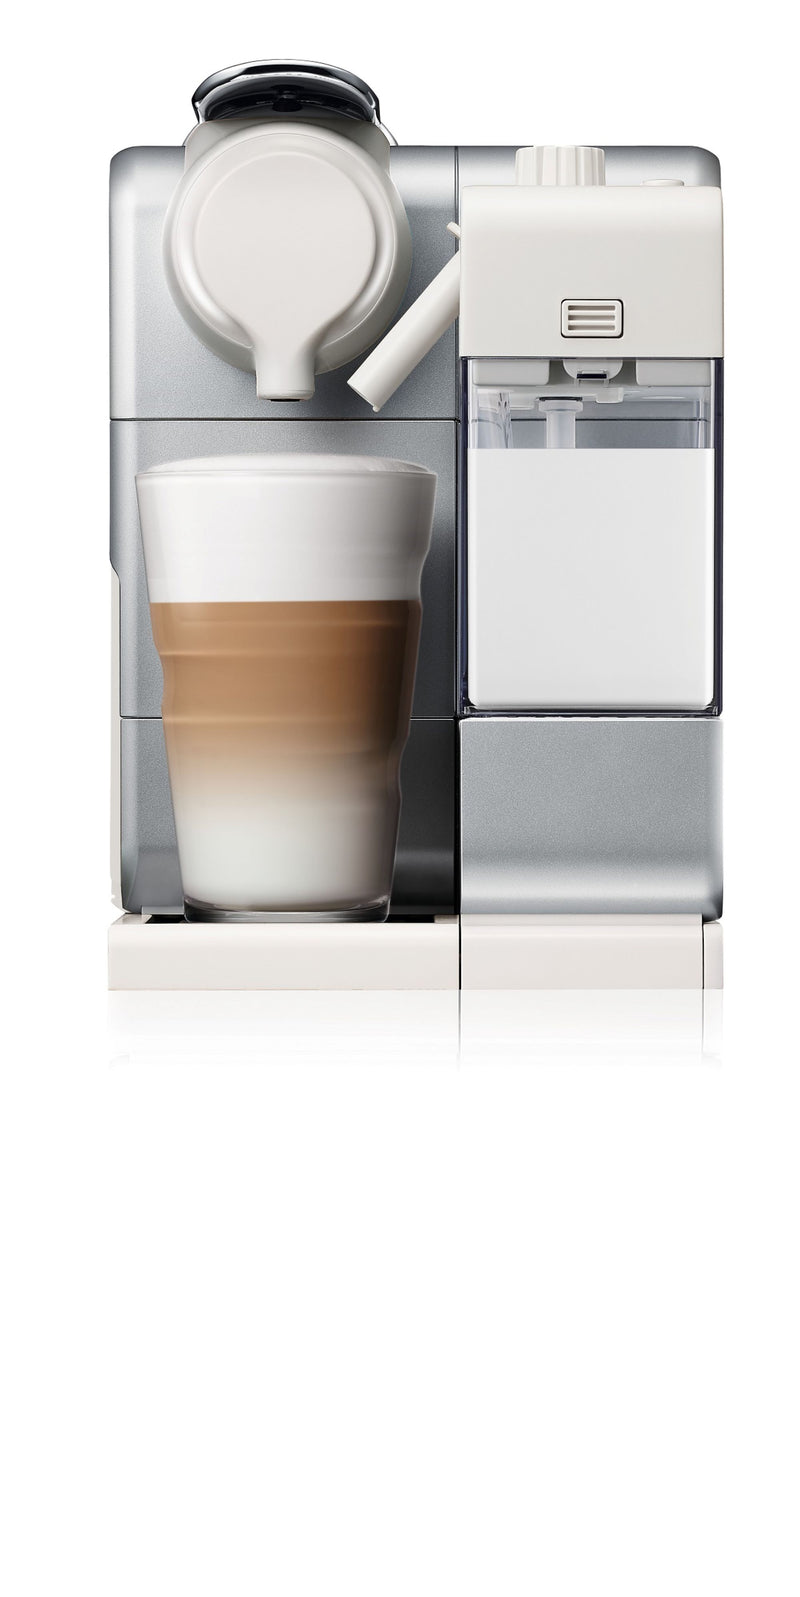 NESPRESSO F521 Lattissima Touch Capsule Coffee Machine